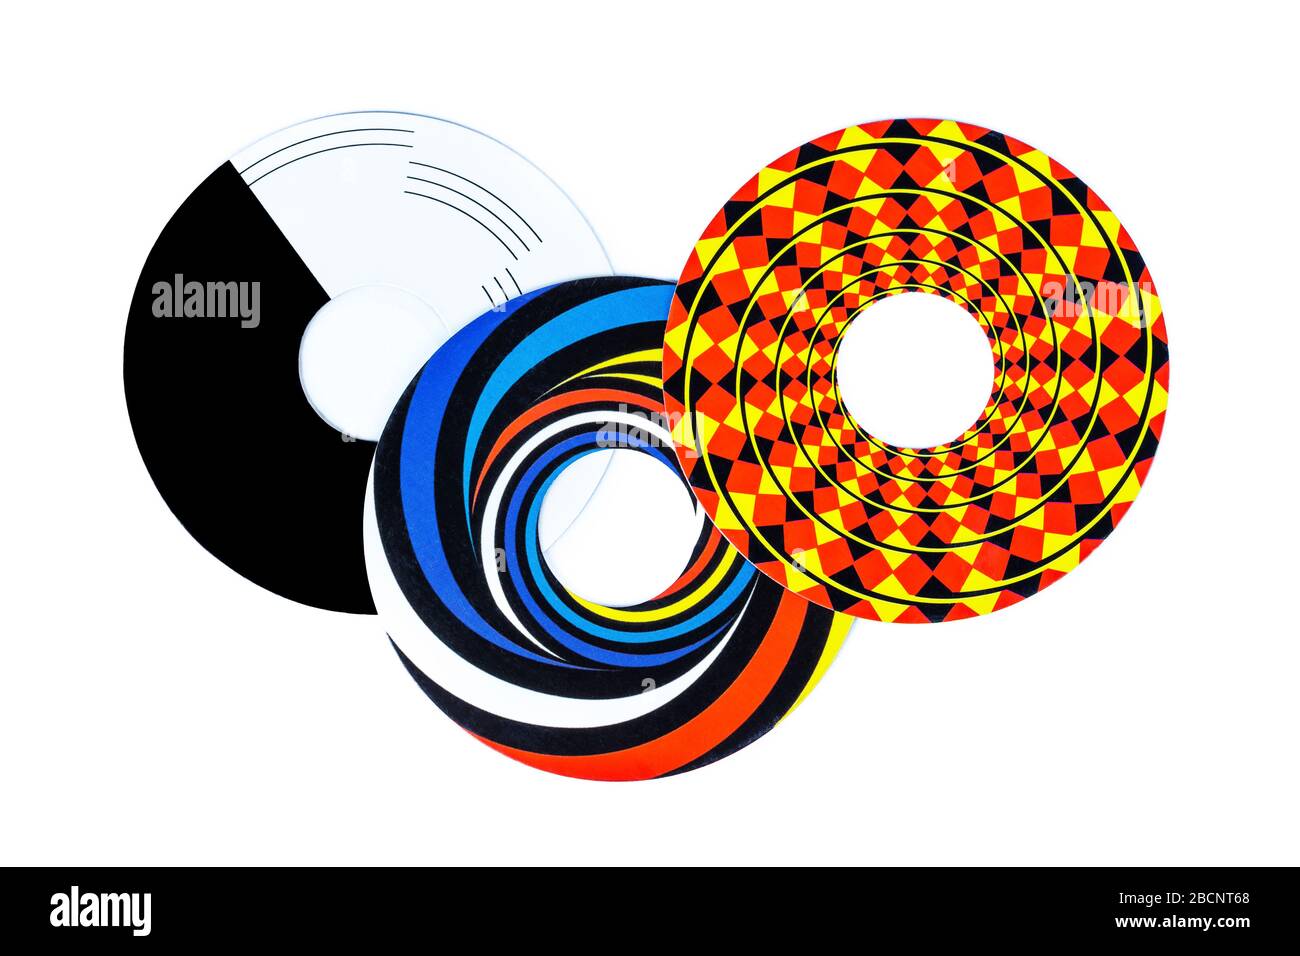 Illusioni ottiche forme astratte, tre tagli colorati cerchio oggetti, elementi, rotazione vagone-ruota effetto illusorico. Percezione visiva falsa Foto Stock